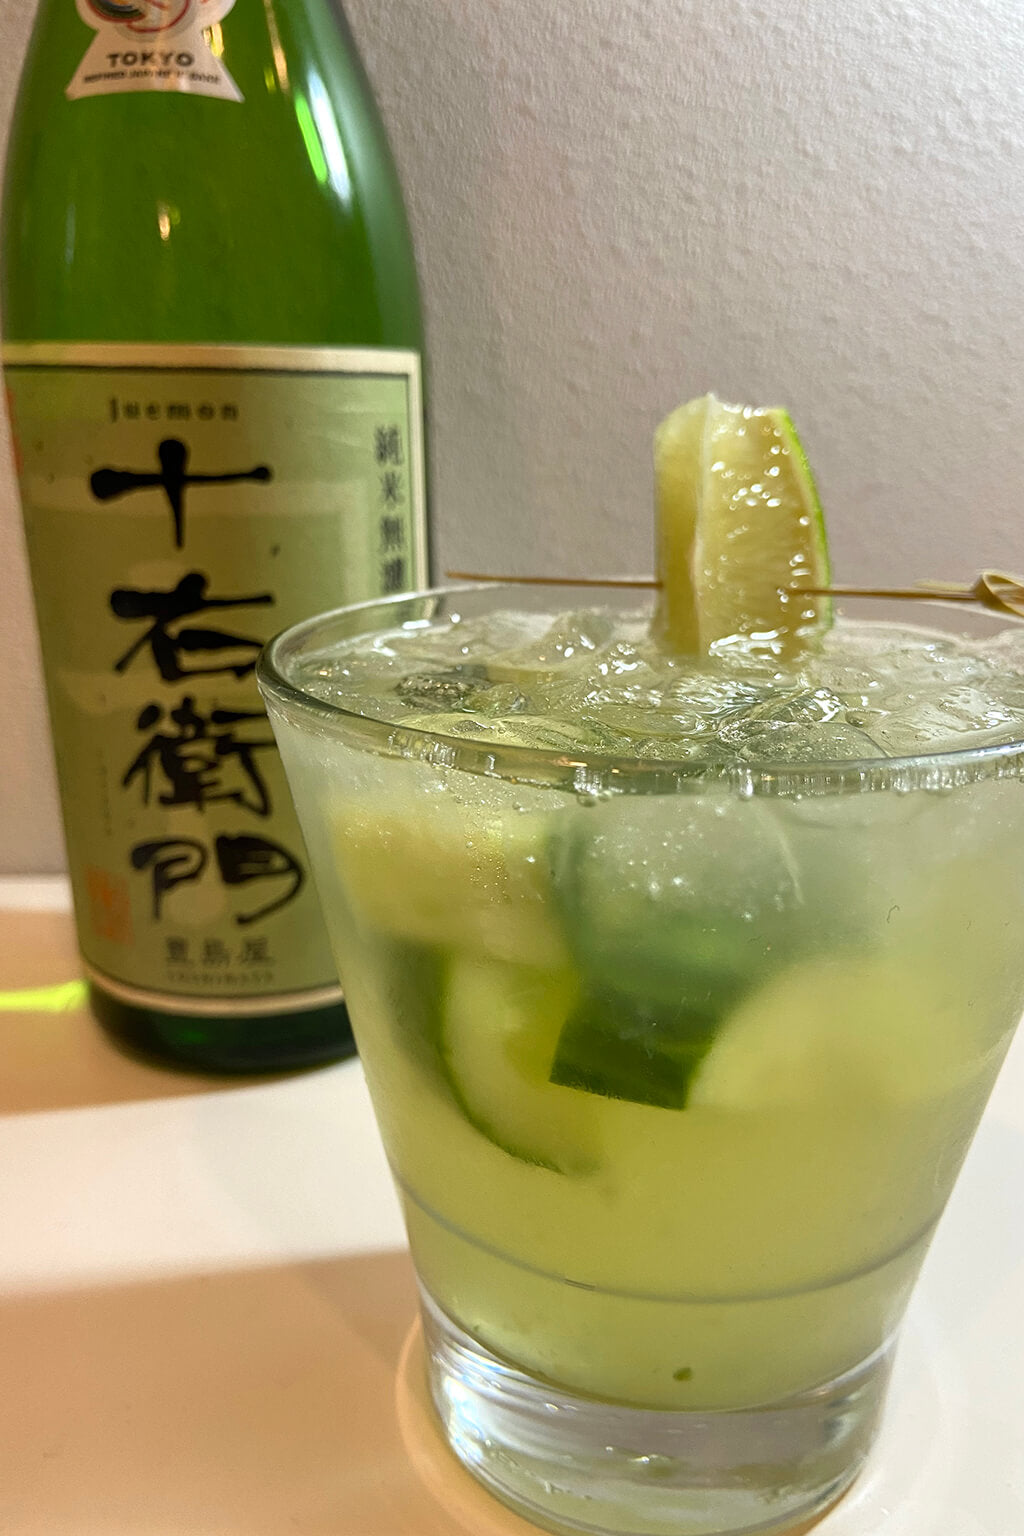 Sake cocktail: Cucumber shisojito.